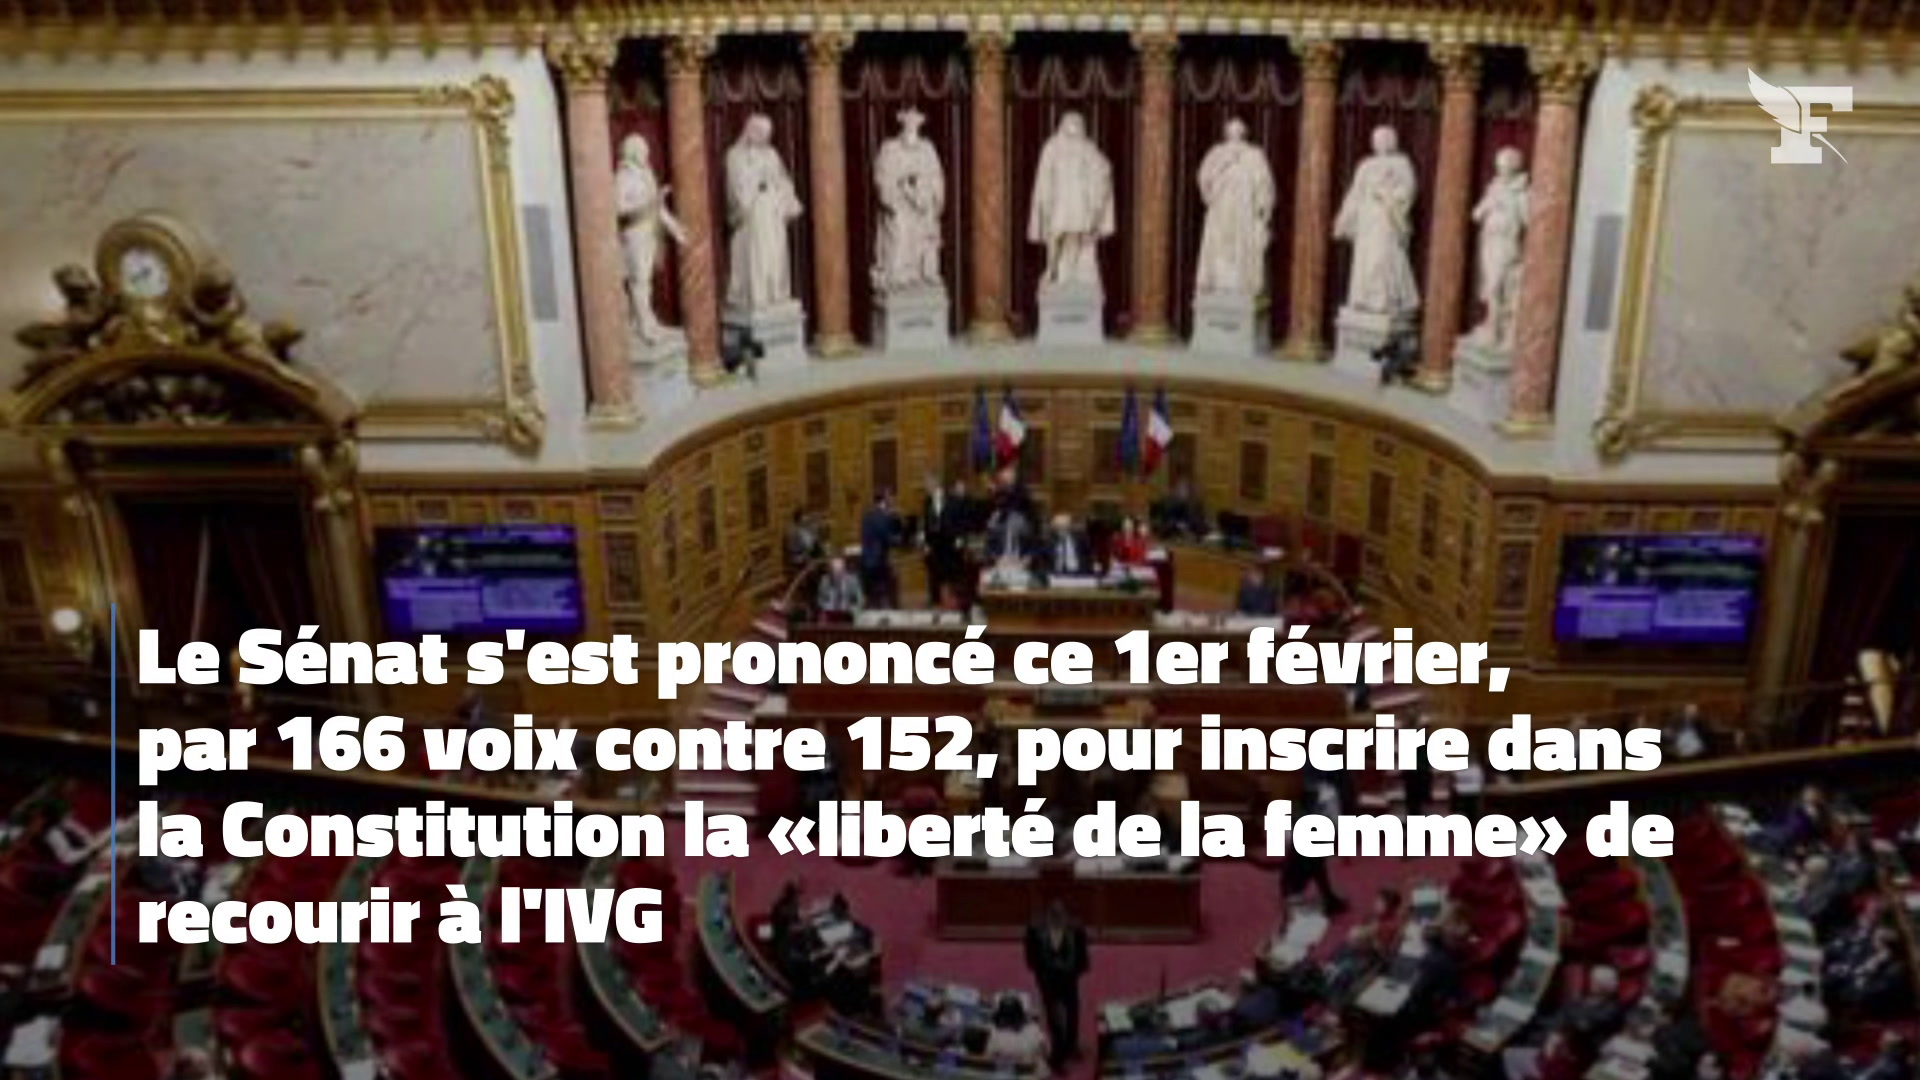 Le Sénat se prononce pour l’inscription dans la Constitution de la «liberté» de recourir à l’IVG